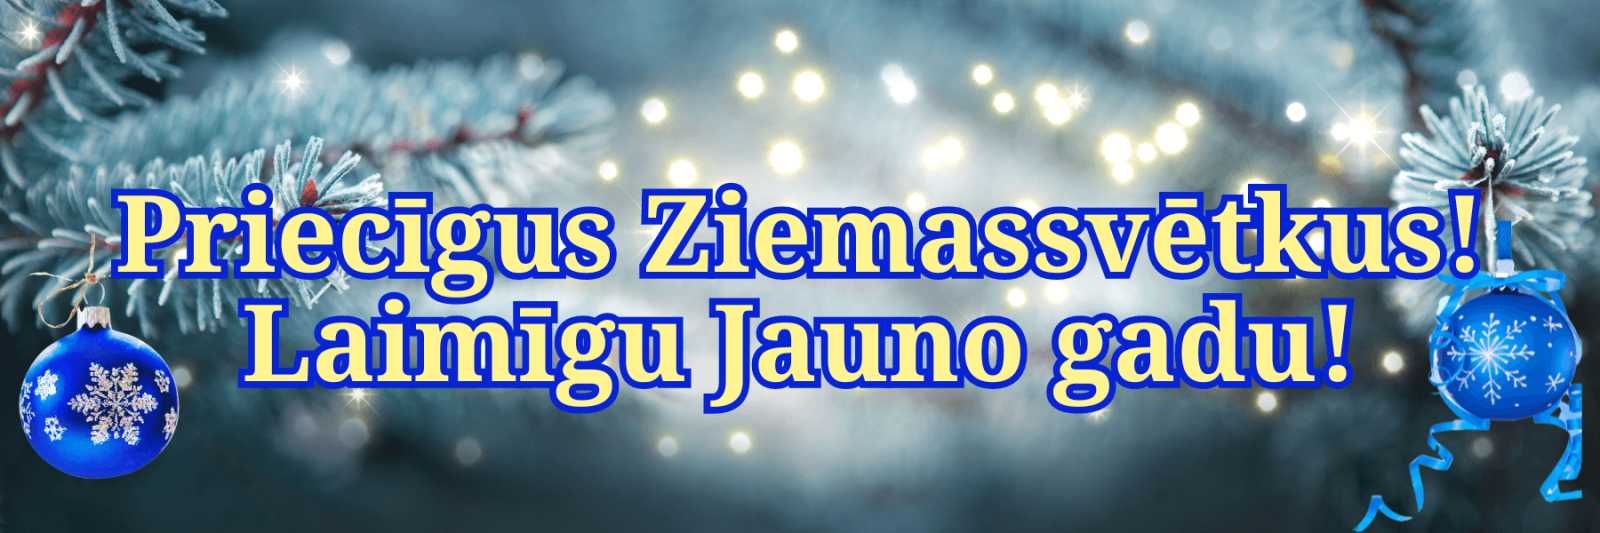 Веселого Рождества и счастливого Нового года! на латышском языке